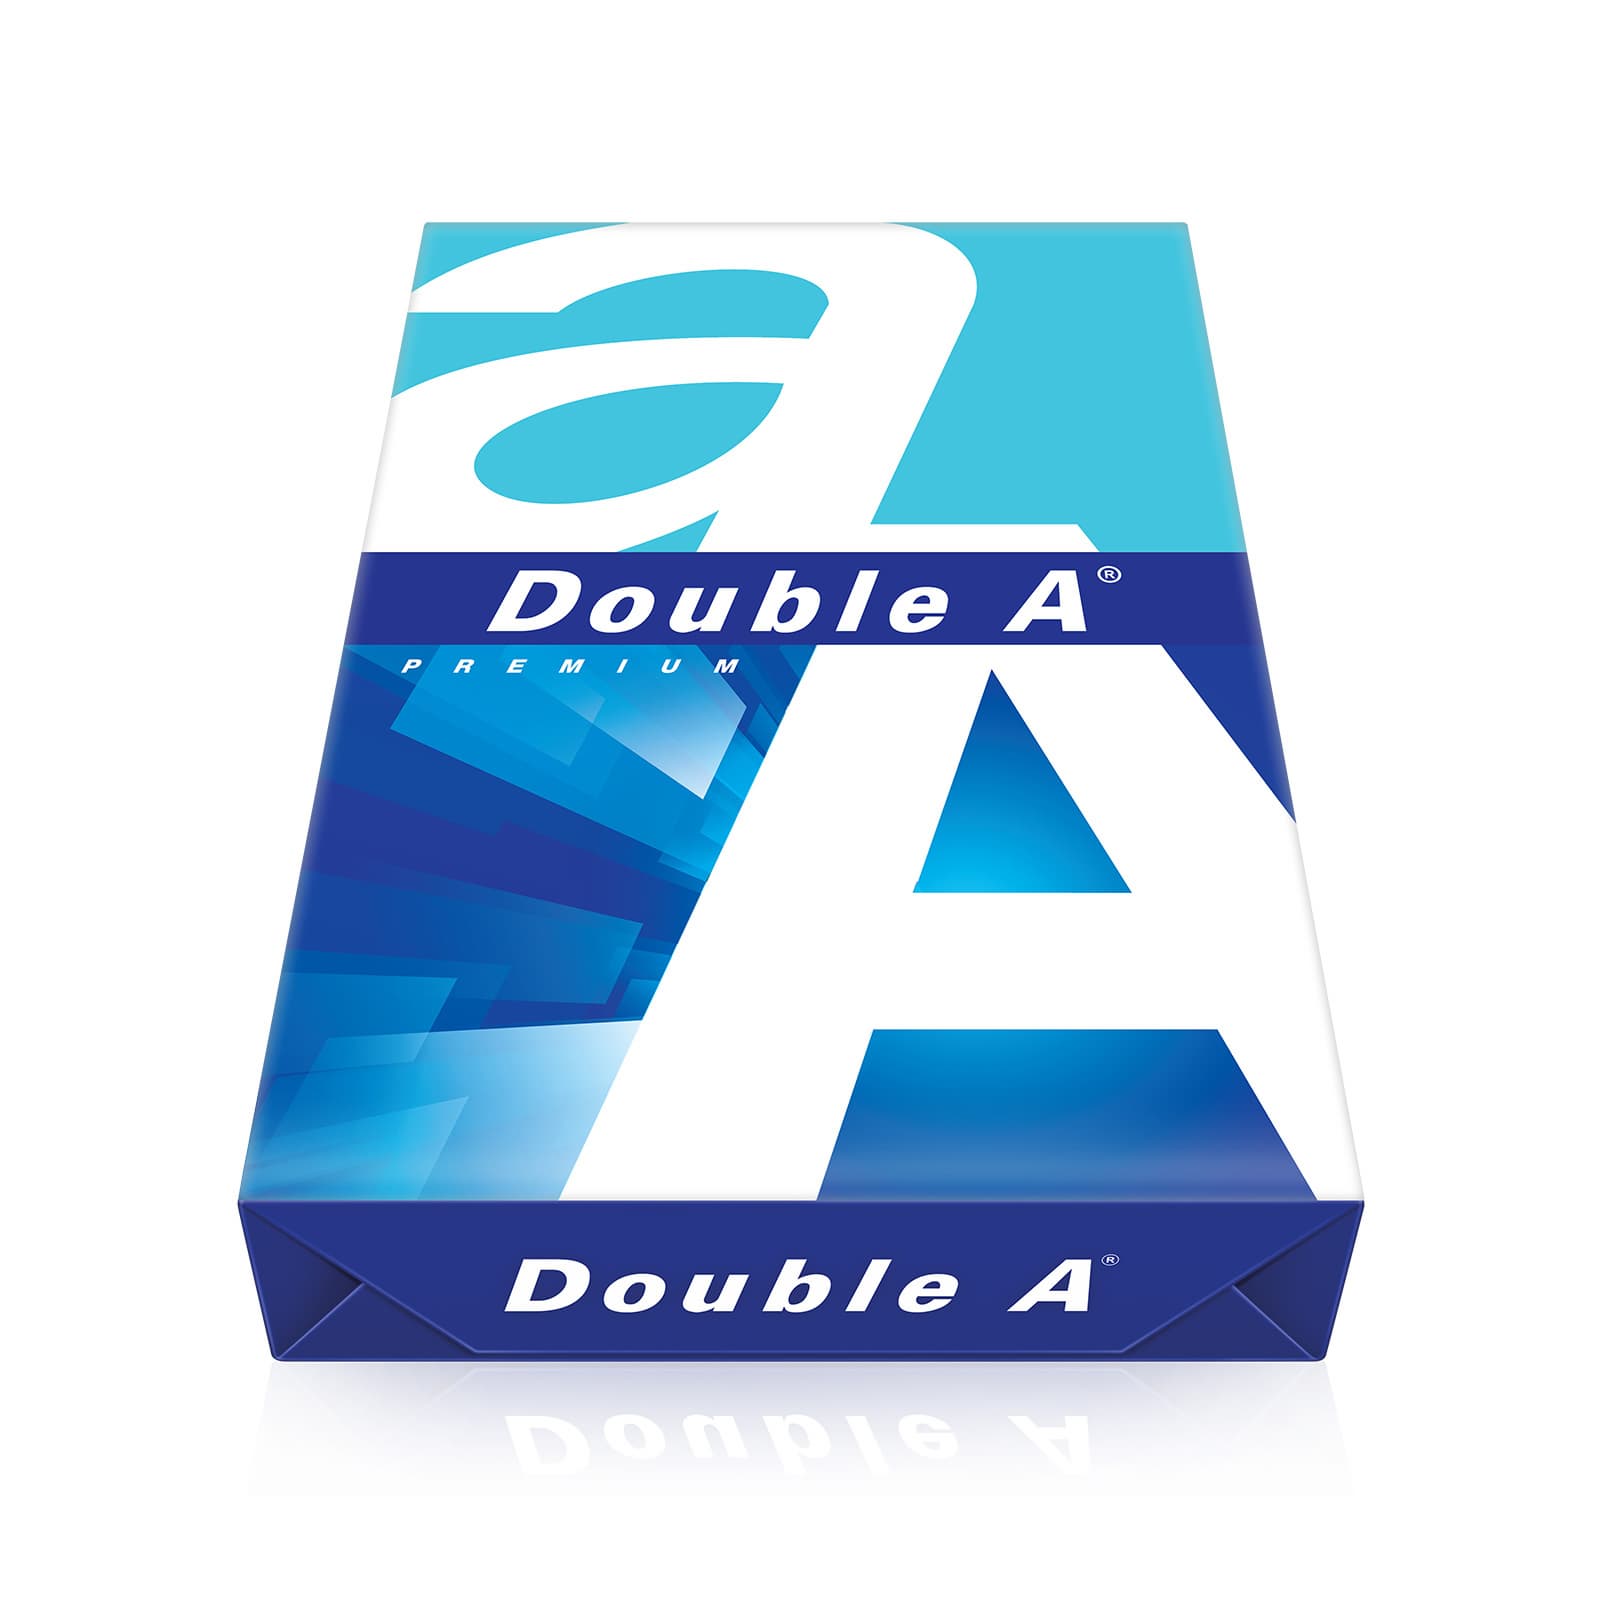 Multipurpose Double A4 Size Copy Paper 80gsm Copier Paper